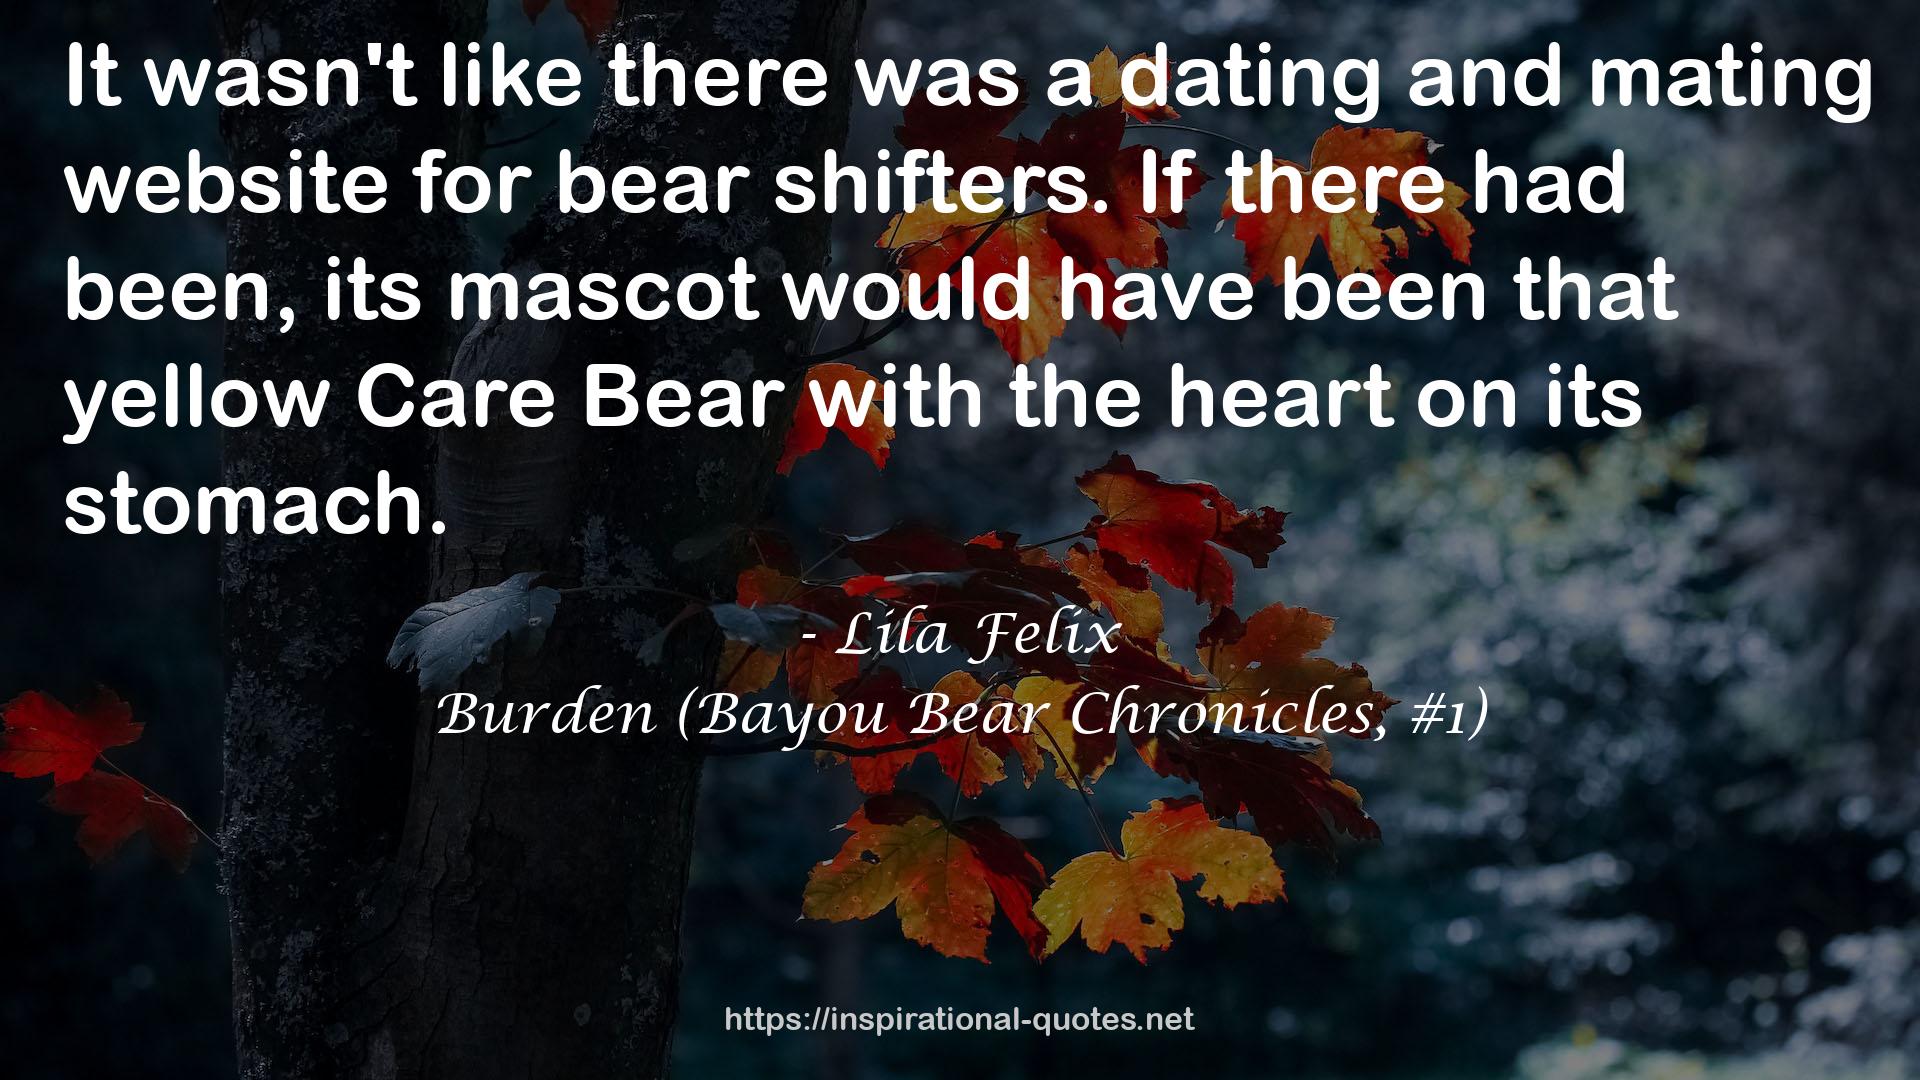 Burden (Bayou Bear Chronicles, #1) QUOTES